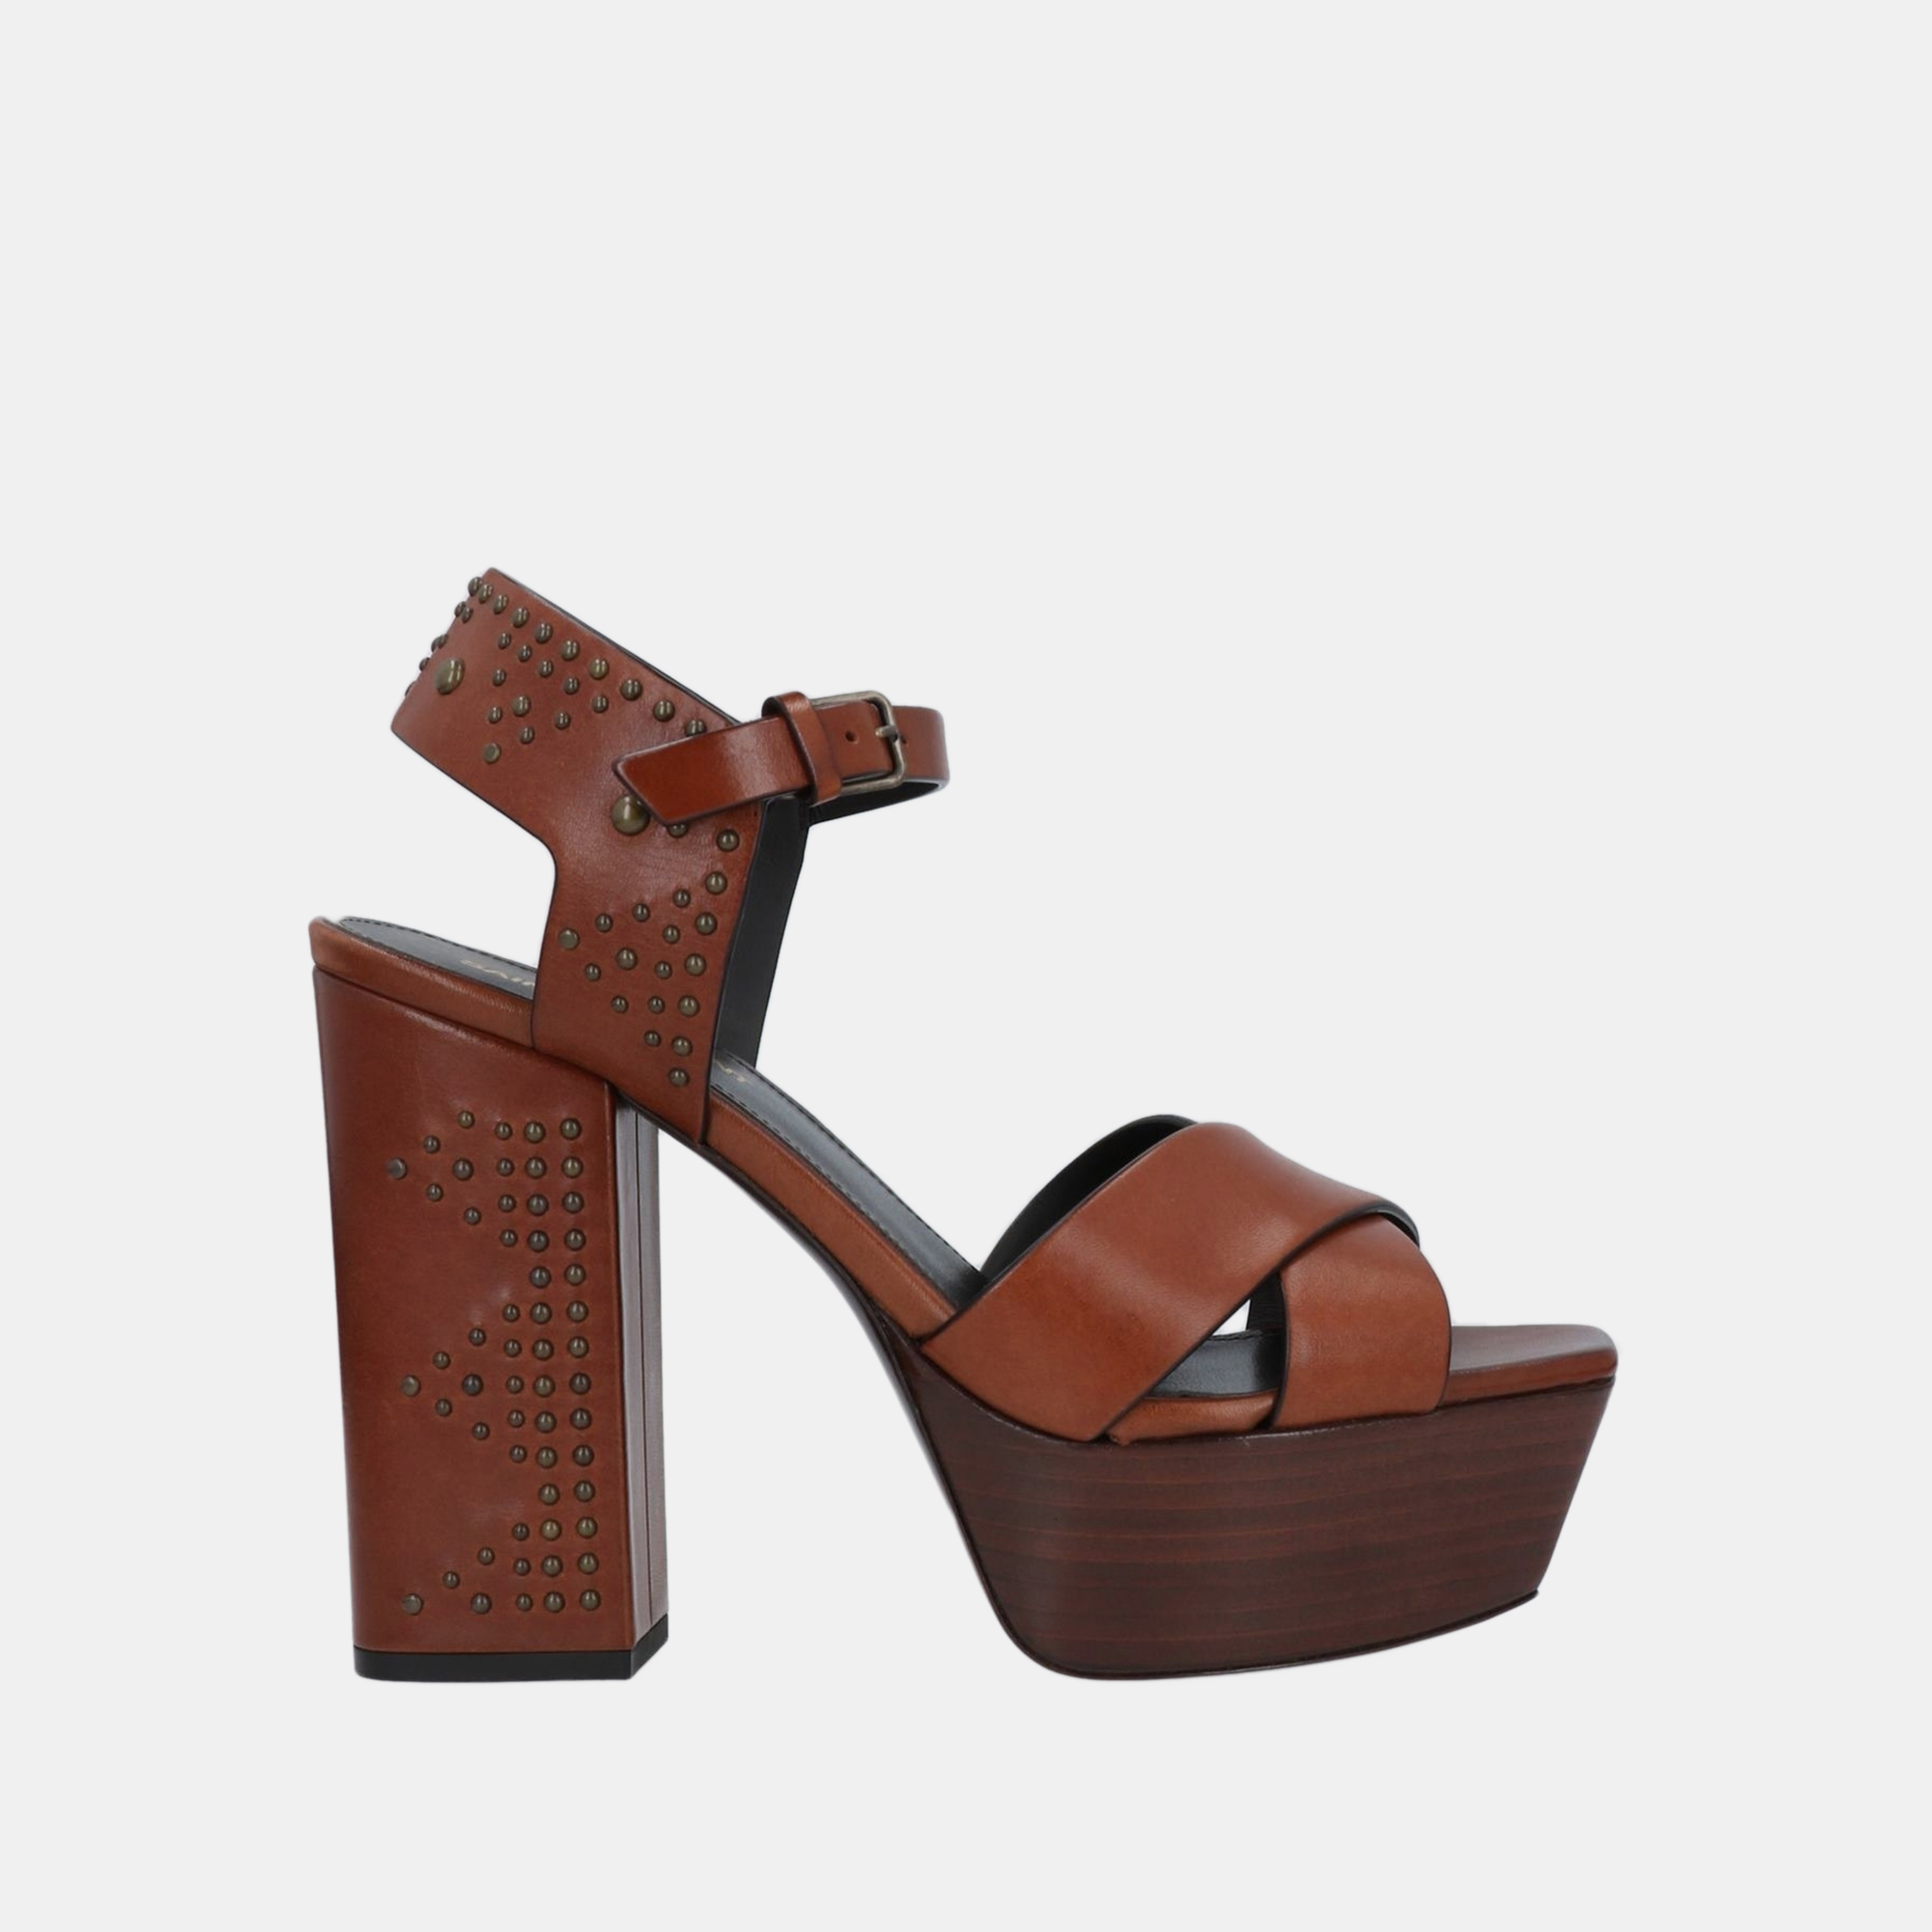 Saint laurent paris saint laurent leather block heel platform sandals size 39